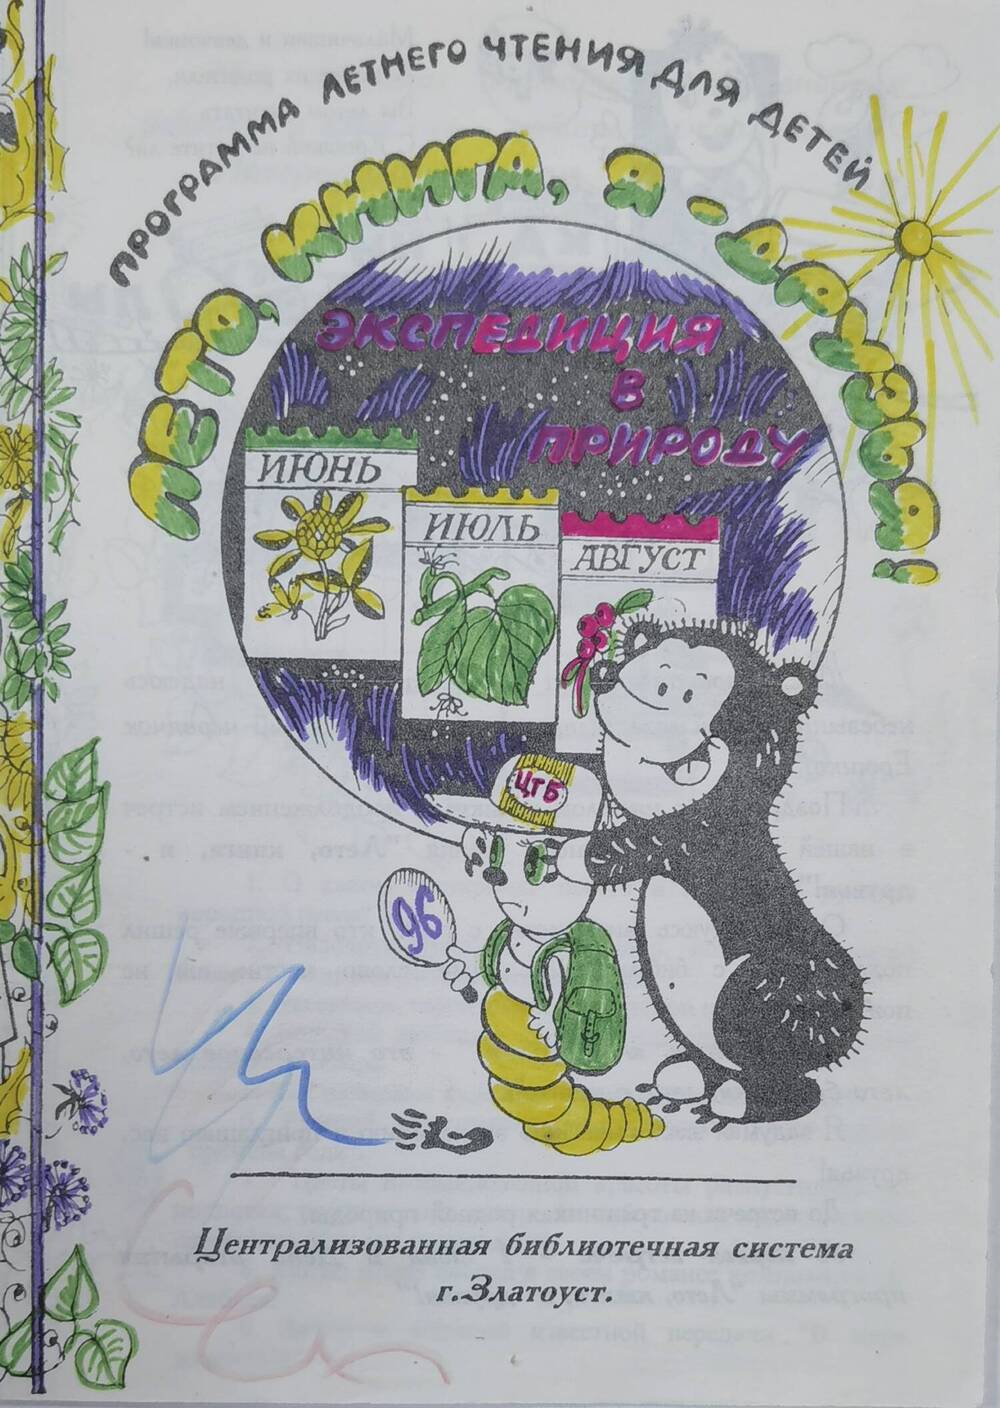 Буклет Лето, книга, я - друзья ЦБС, 1996 г.